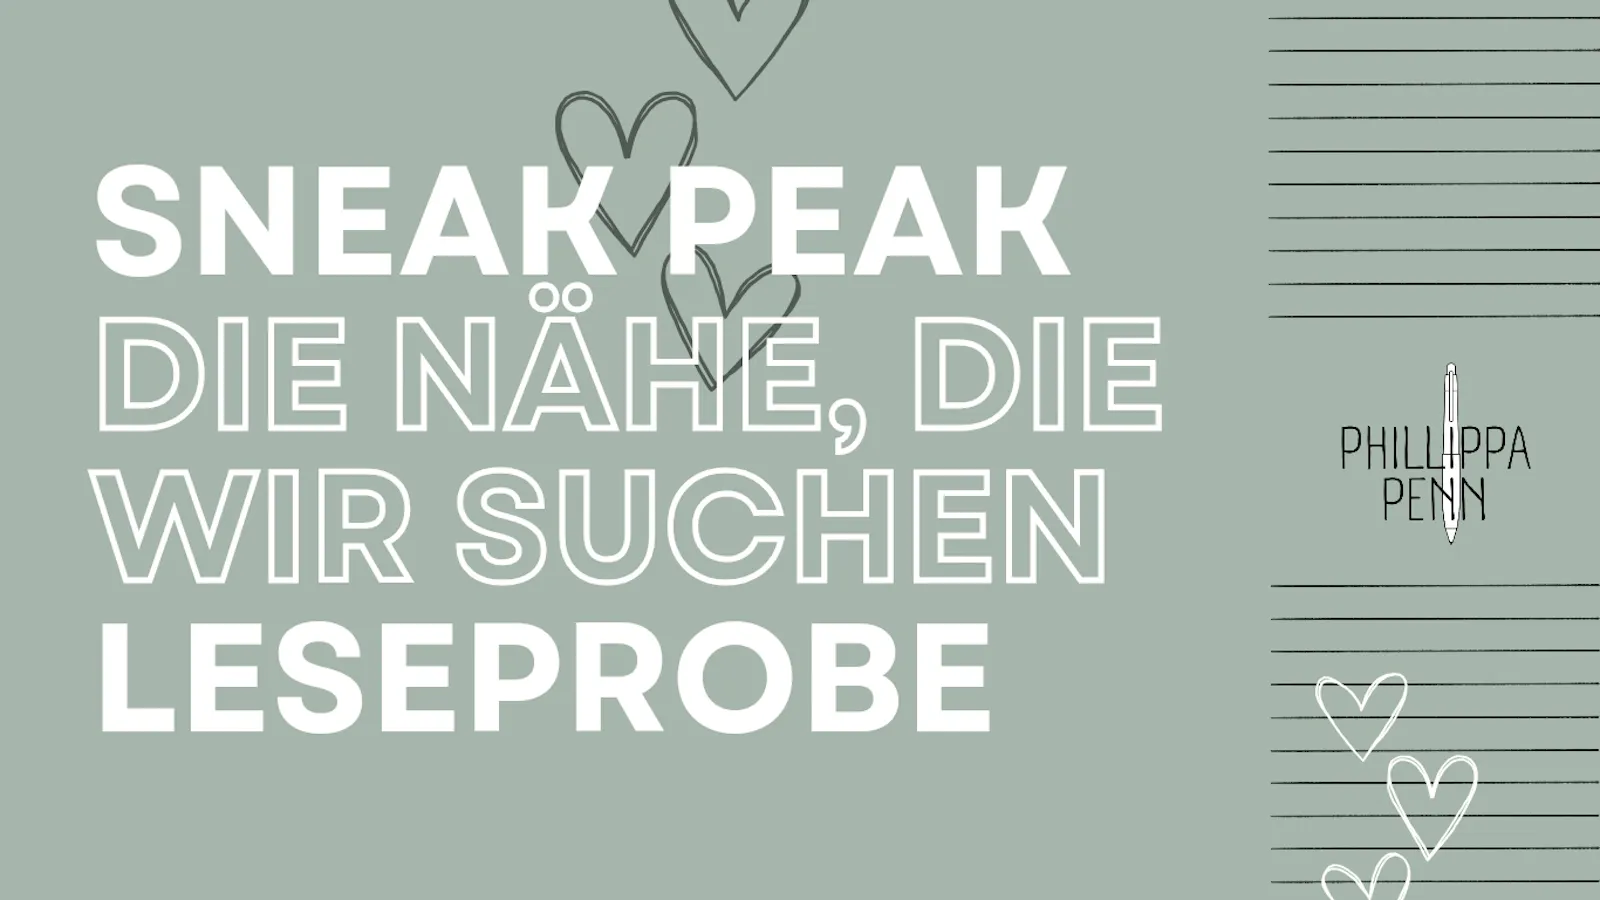 Auf dem Titelbild ist auf salbeigrünem Grund zu lesen: "Sneak Peak. Die Nähe, die wir suchen. Leseprobe." Daneben sieht man das Logo der Autorin Phillippa Penn.